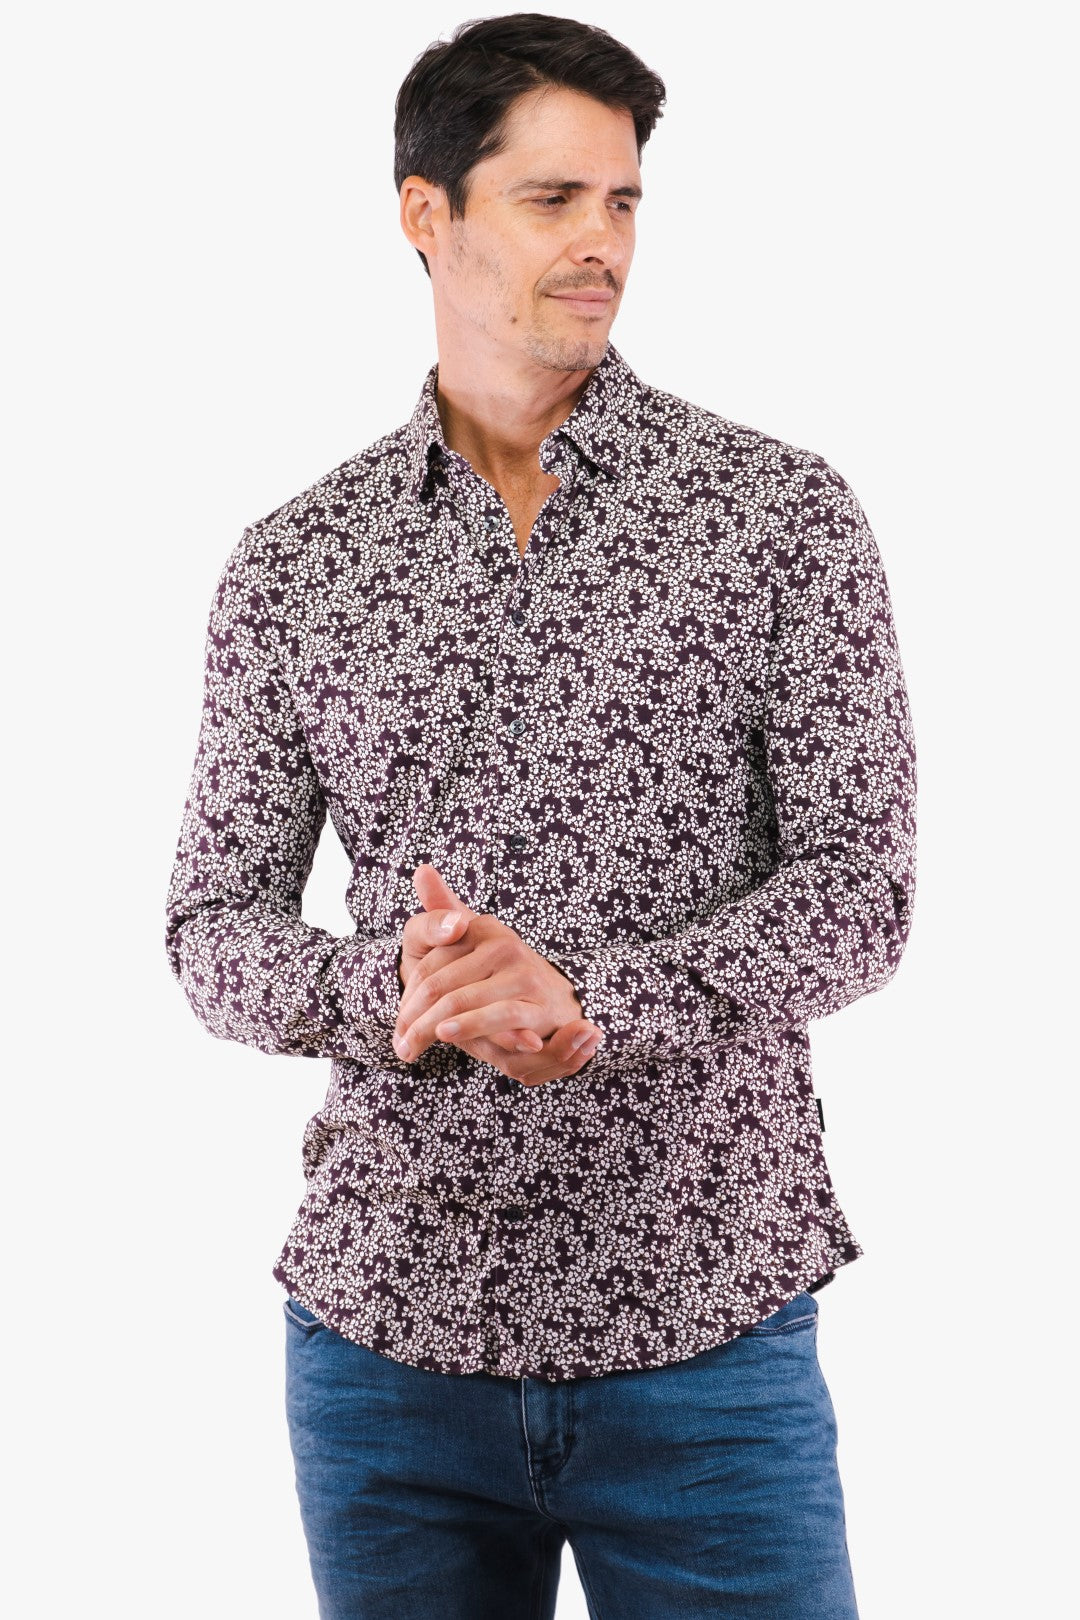 Burgundy colored Hörst shirt